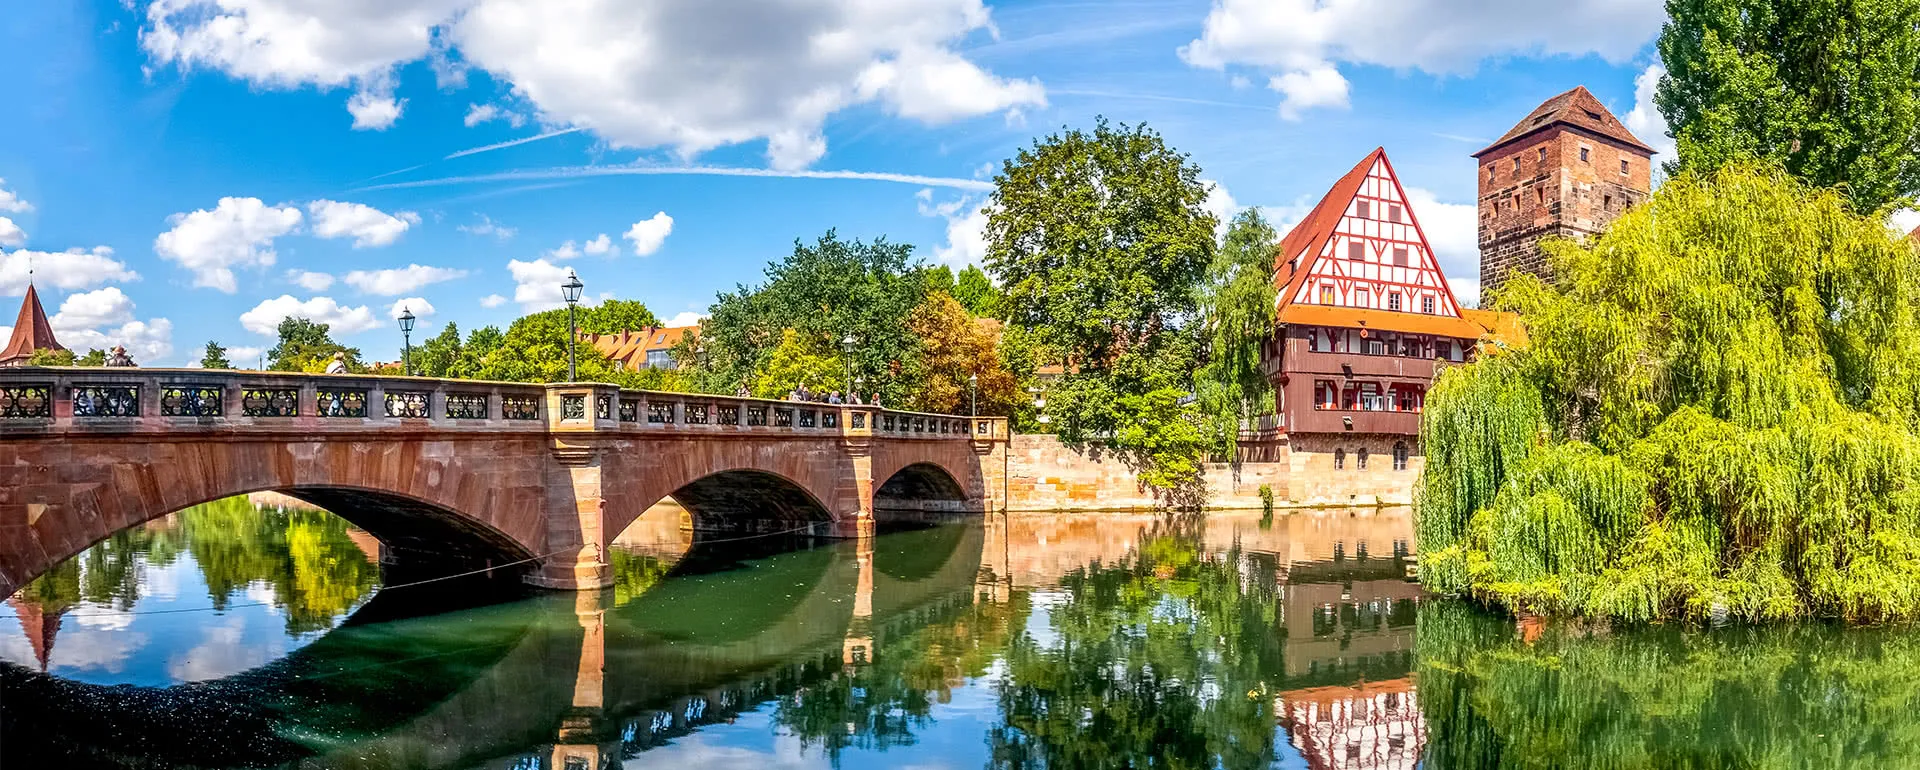 Nürnberg - das Reiseziel mit Jugendherbergen